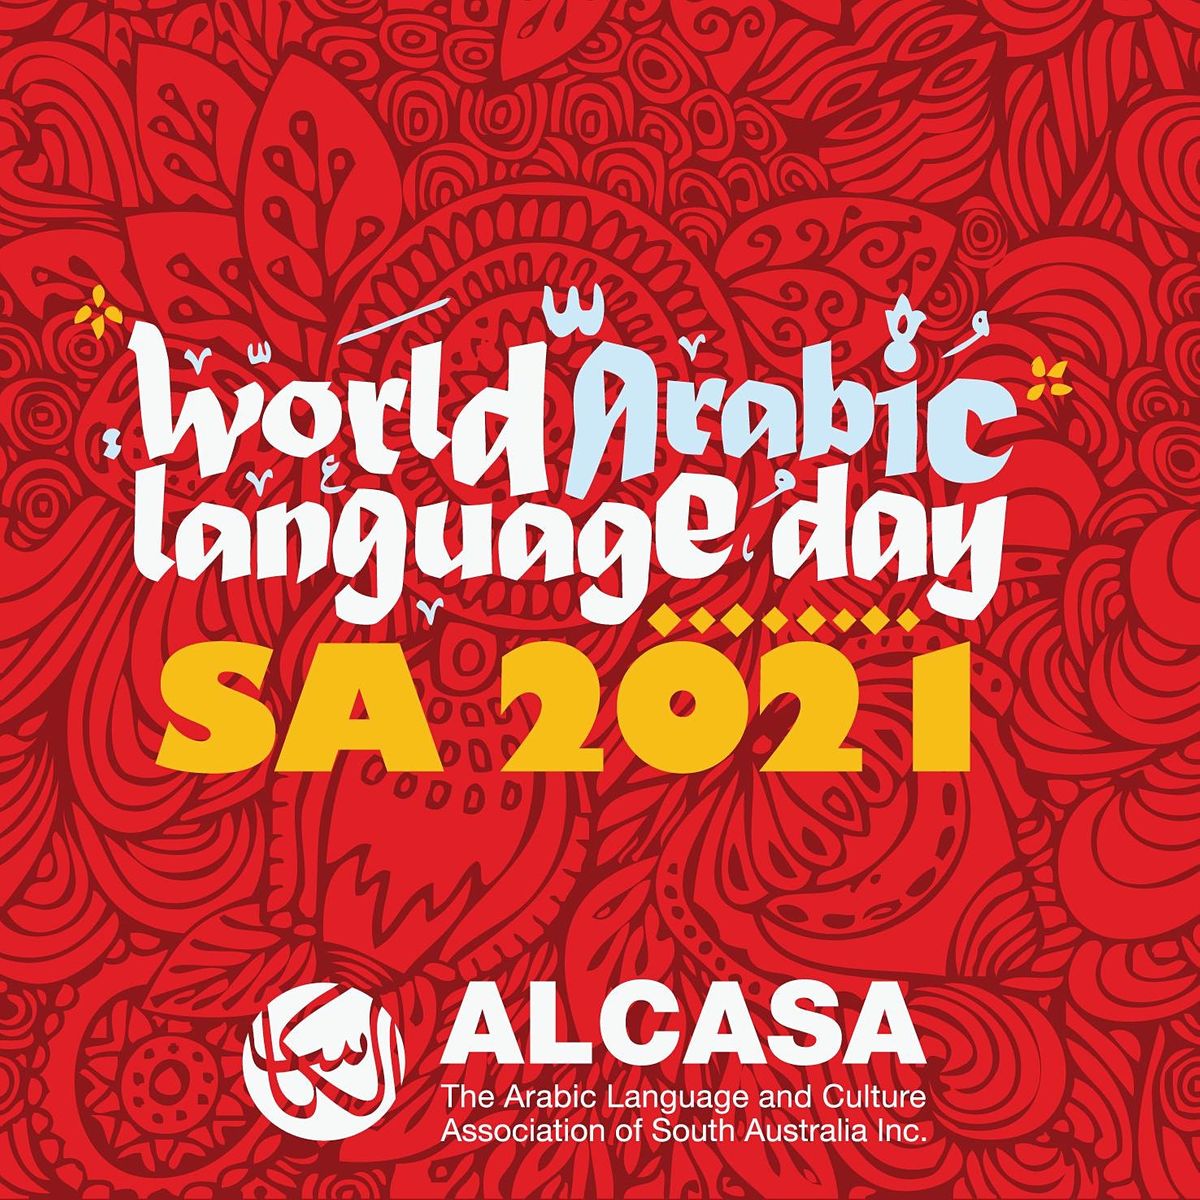 World Arabic Language Day in SA 2021